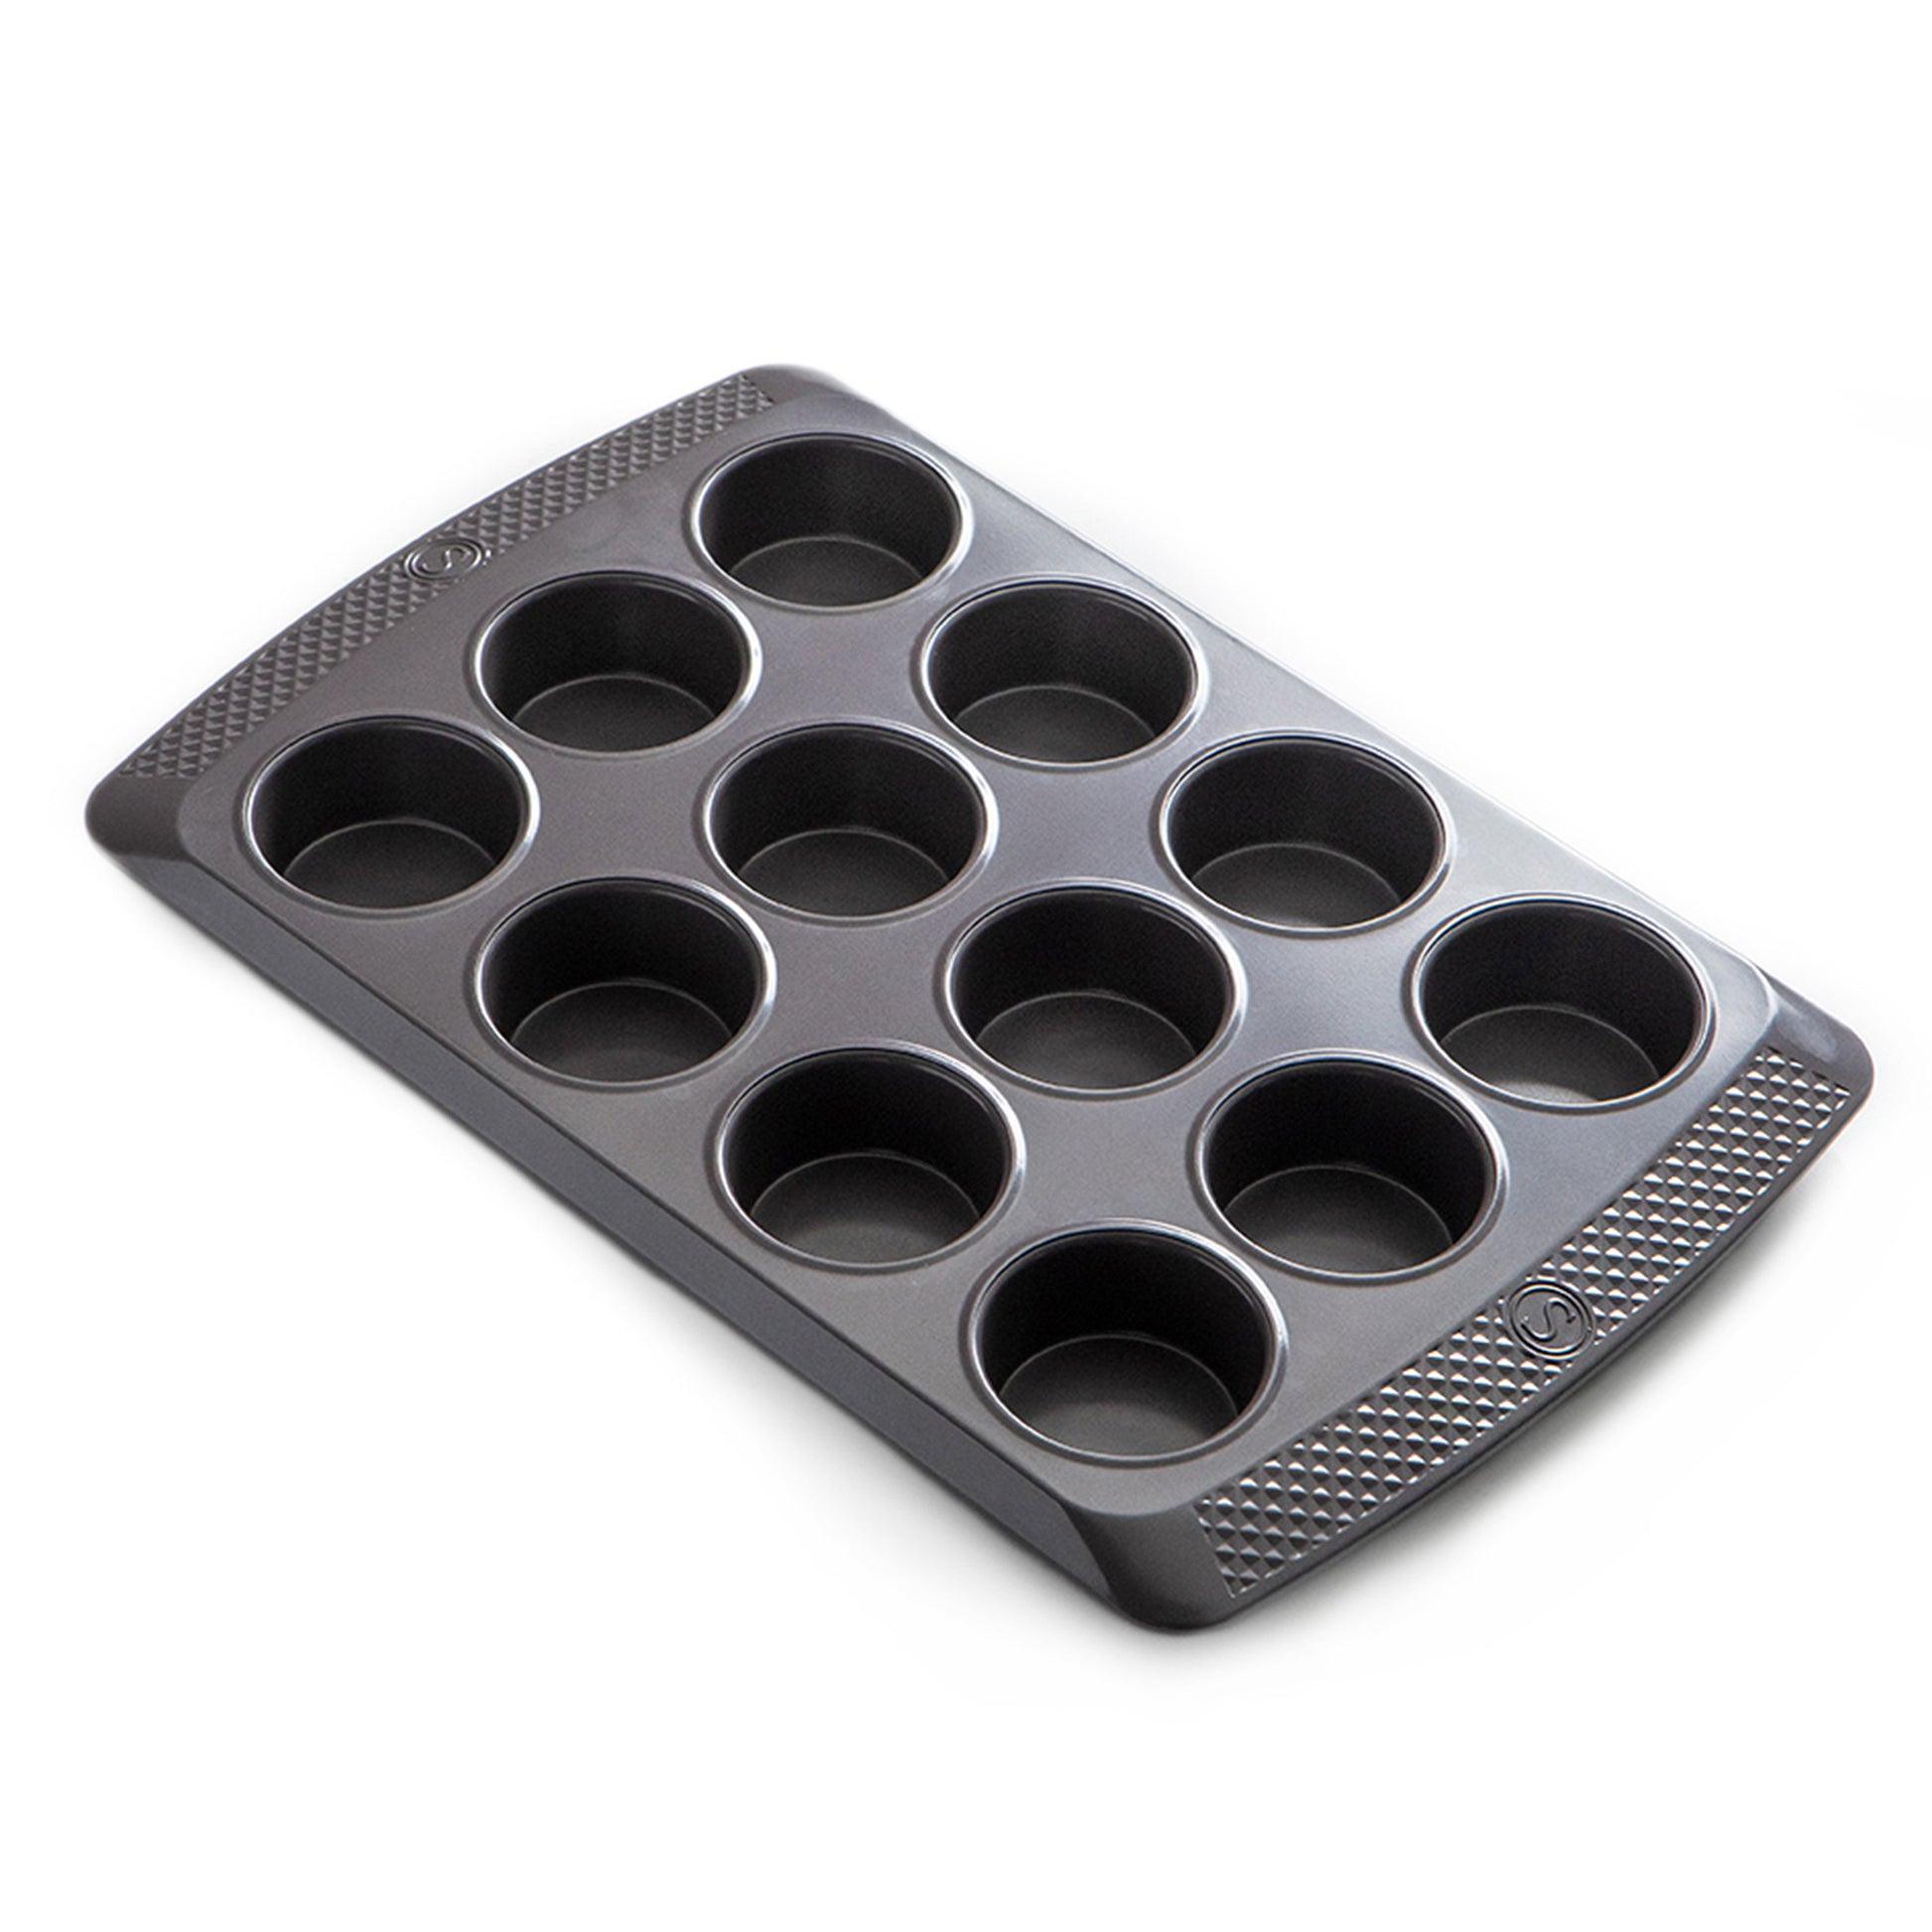 New mini muffin pan. : r/castiron